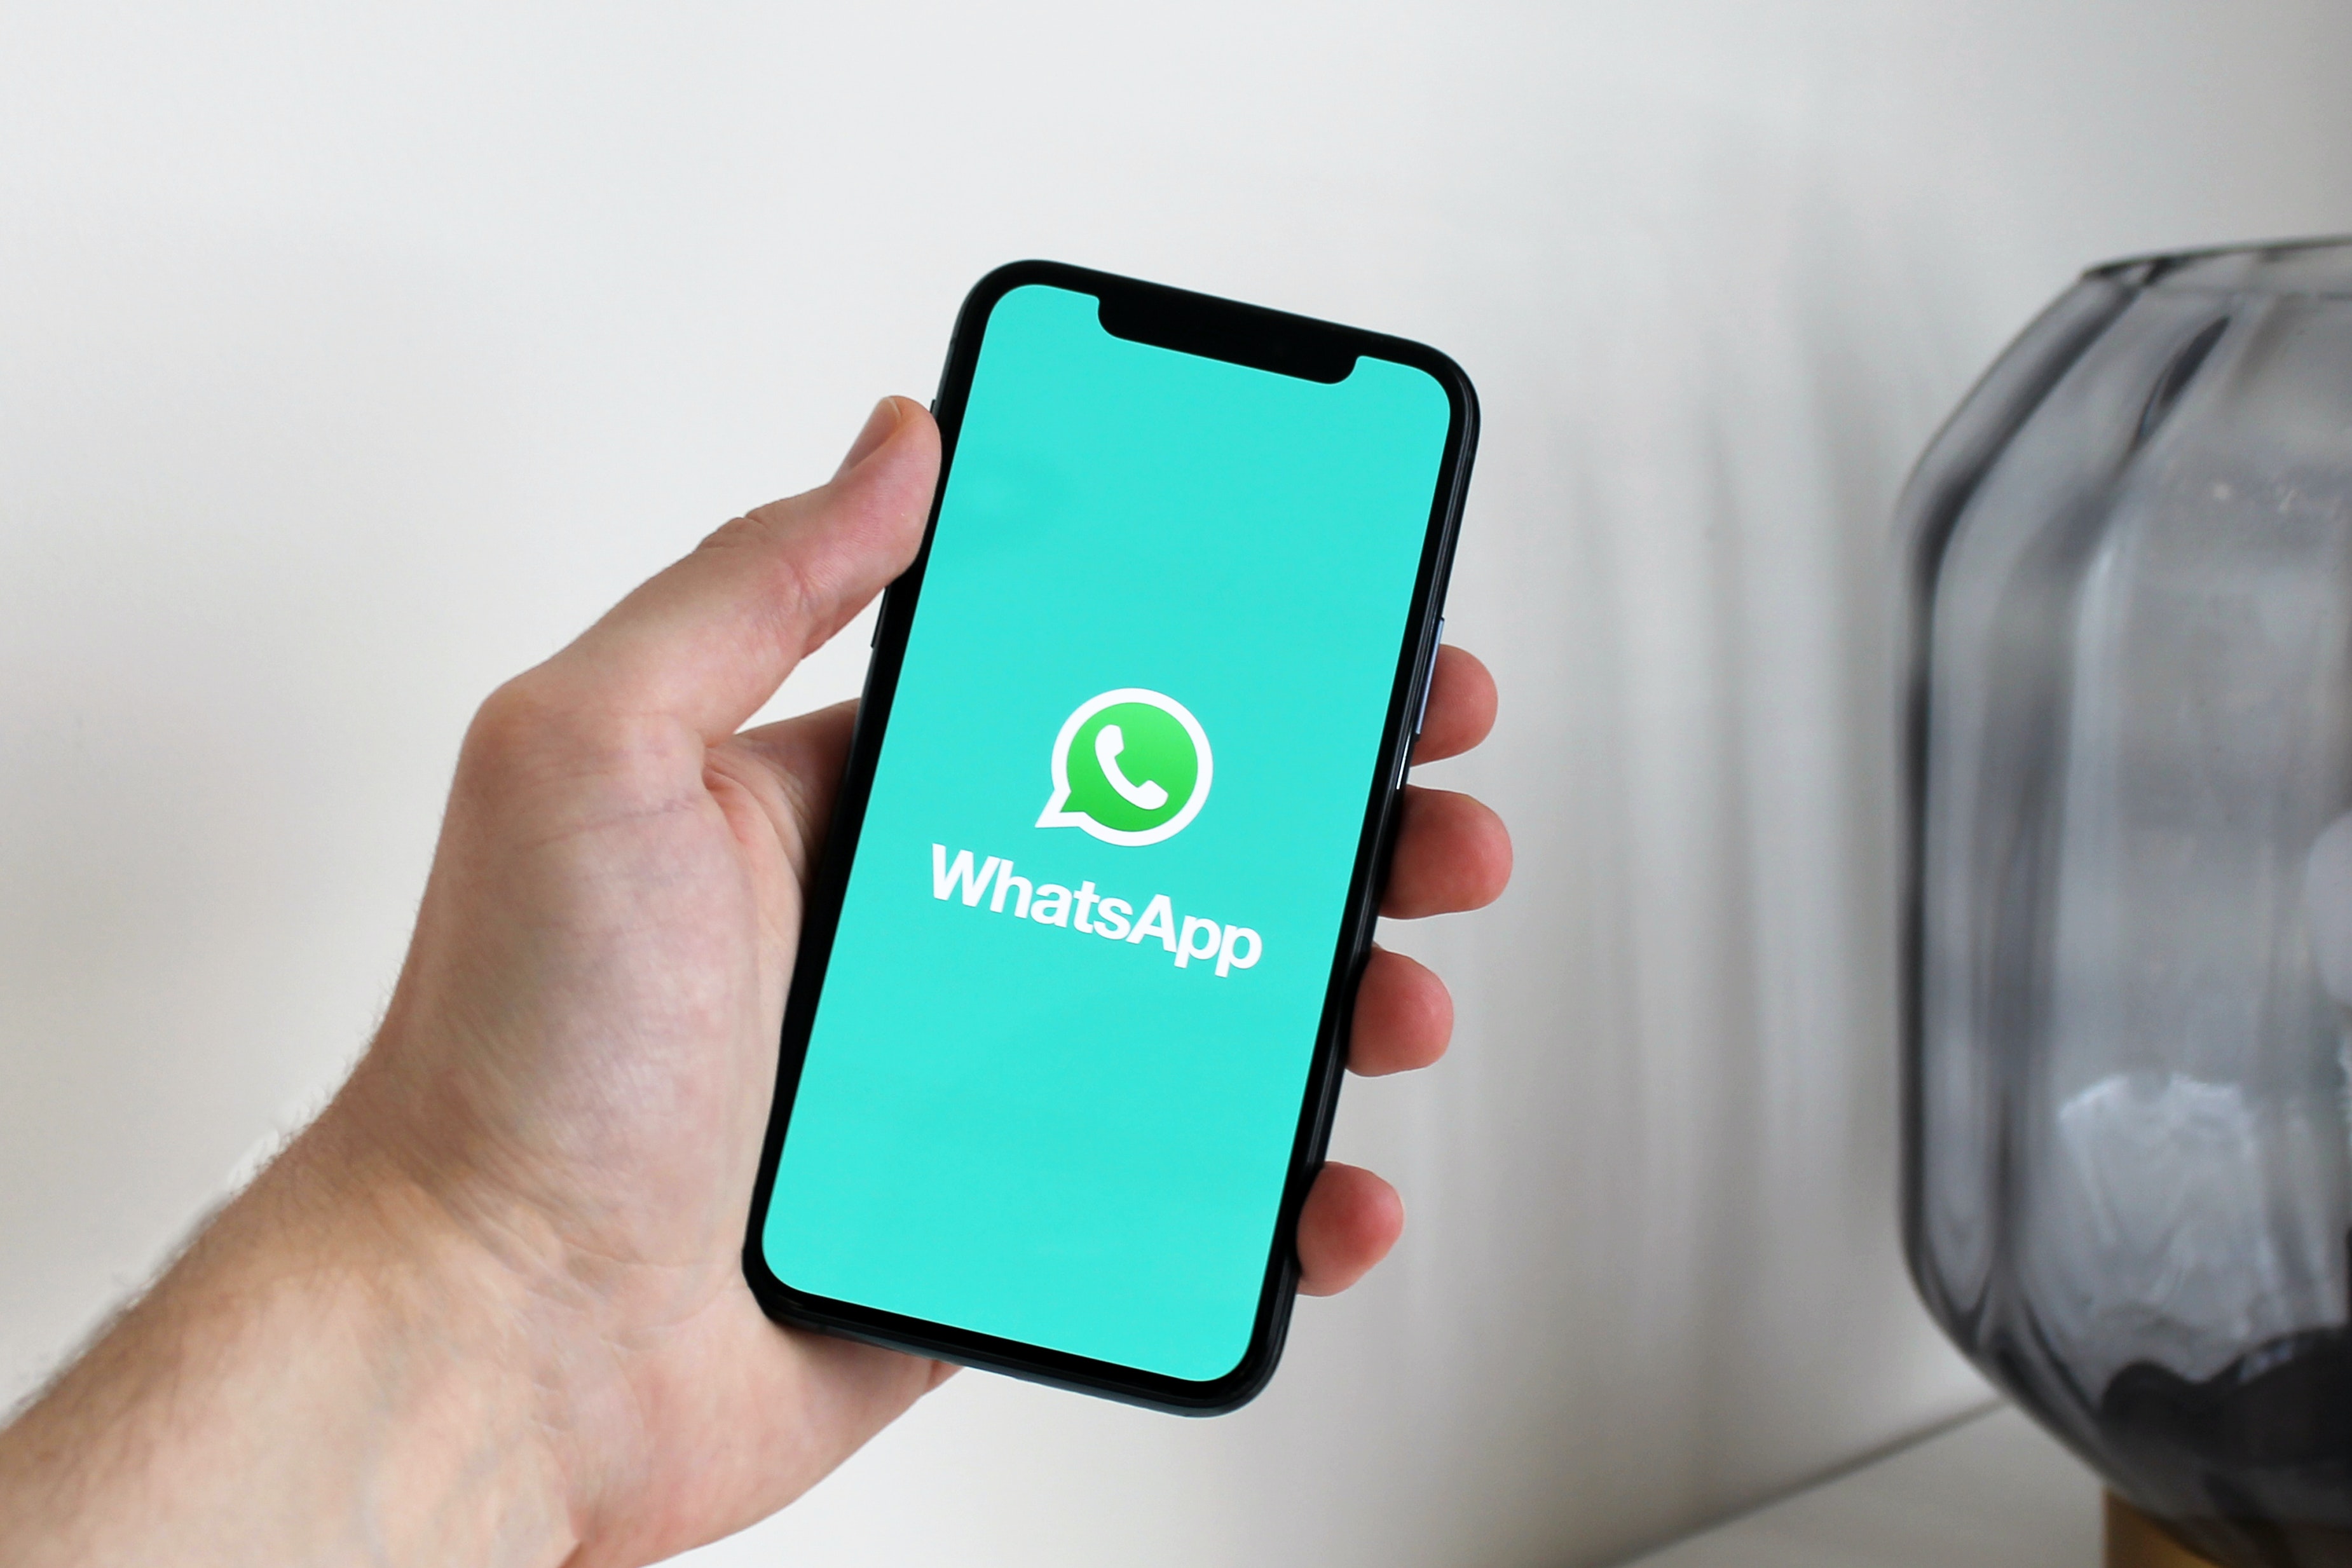 WhatsApp tendrá algunps cambios en sus próximas actualizaciones.  (Foto Prensa Libre: Anton/Pexels)